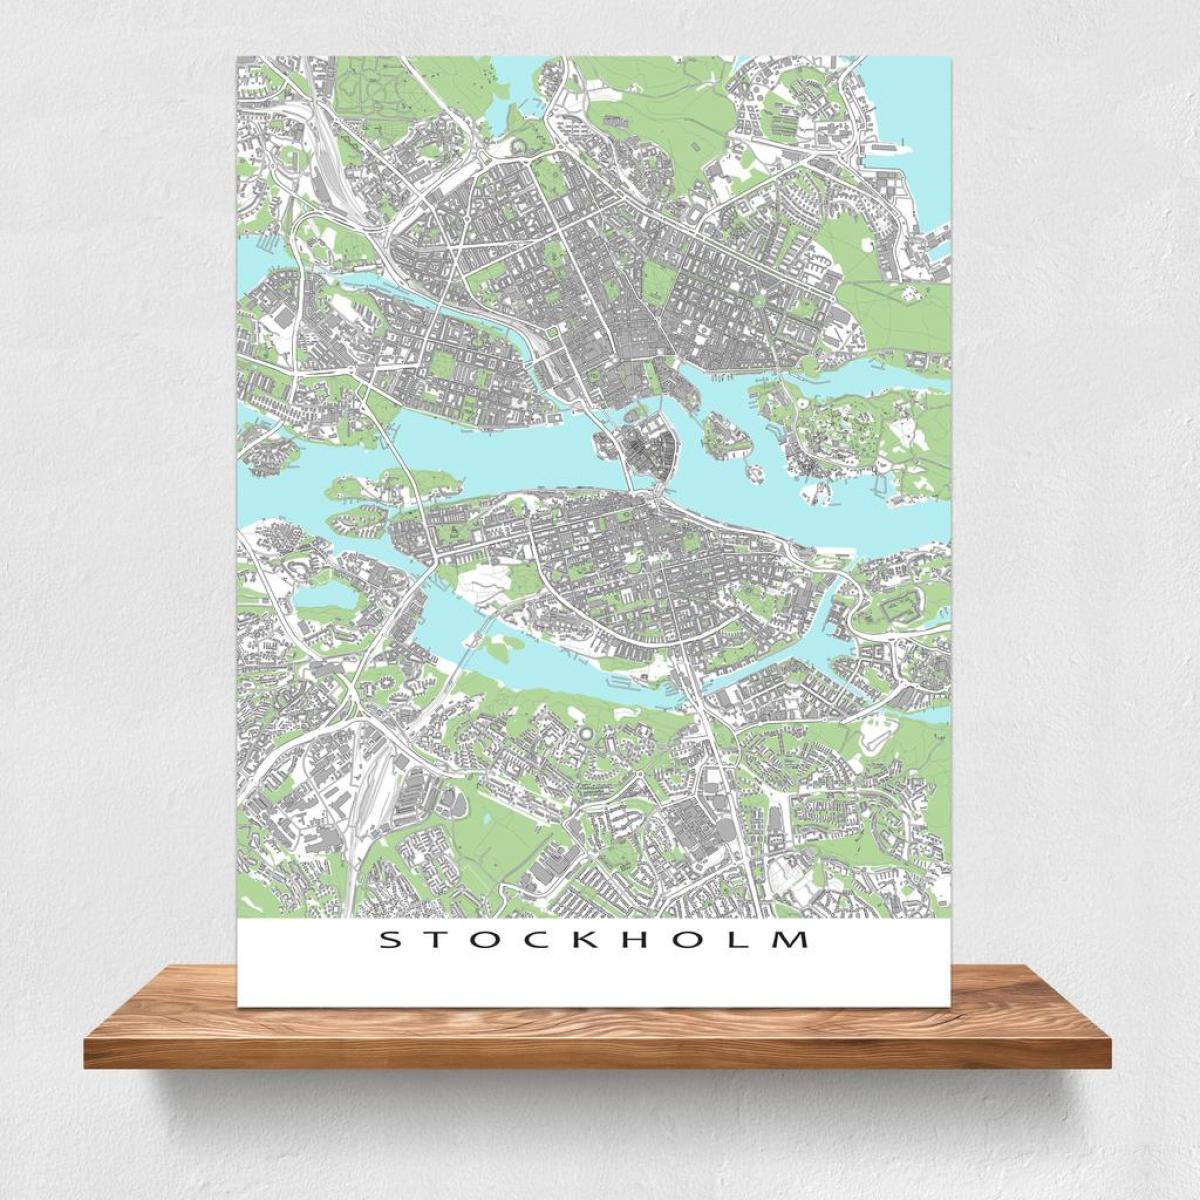 Stockholm harita baskı haritası 